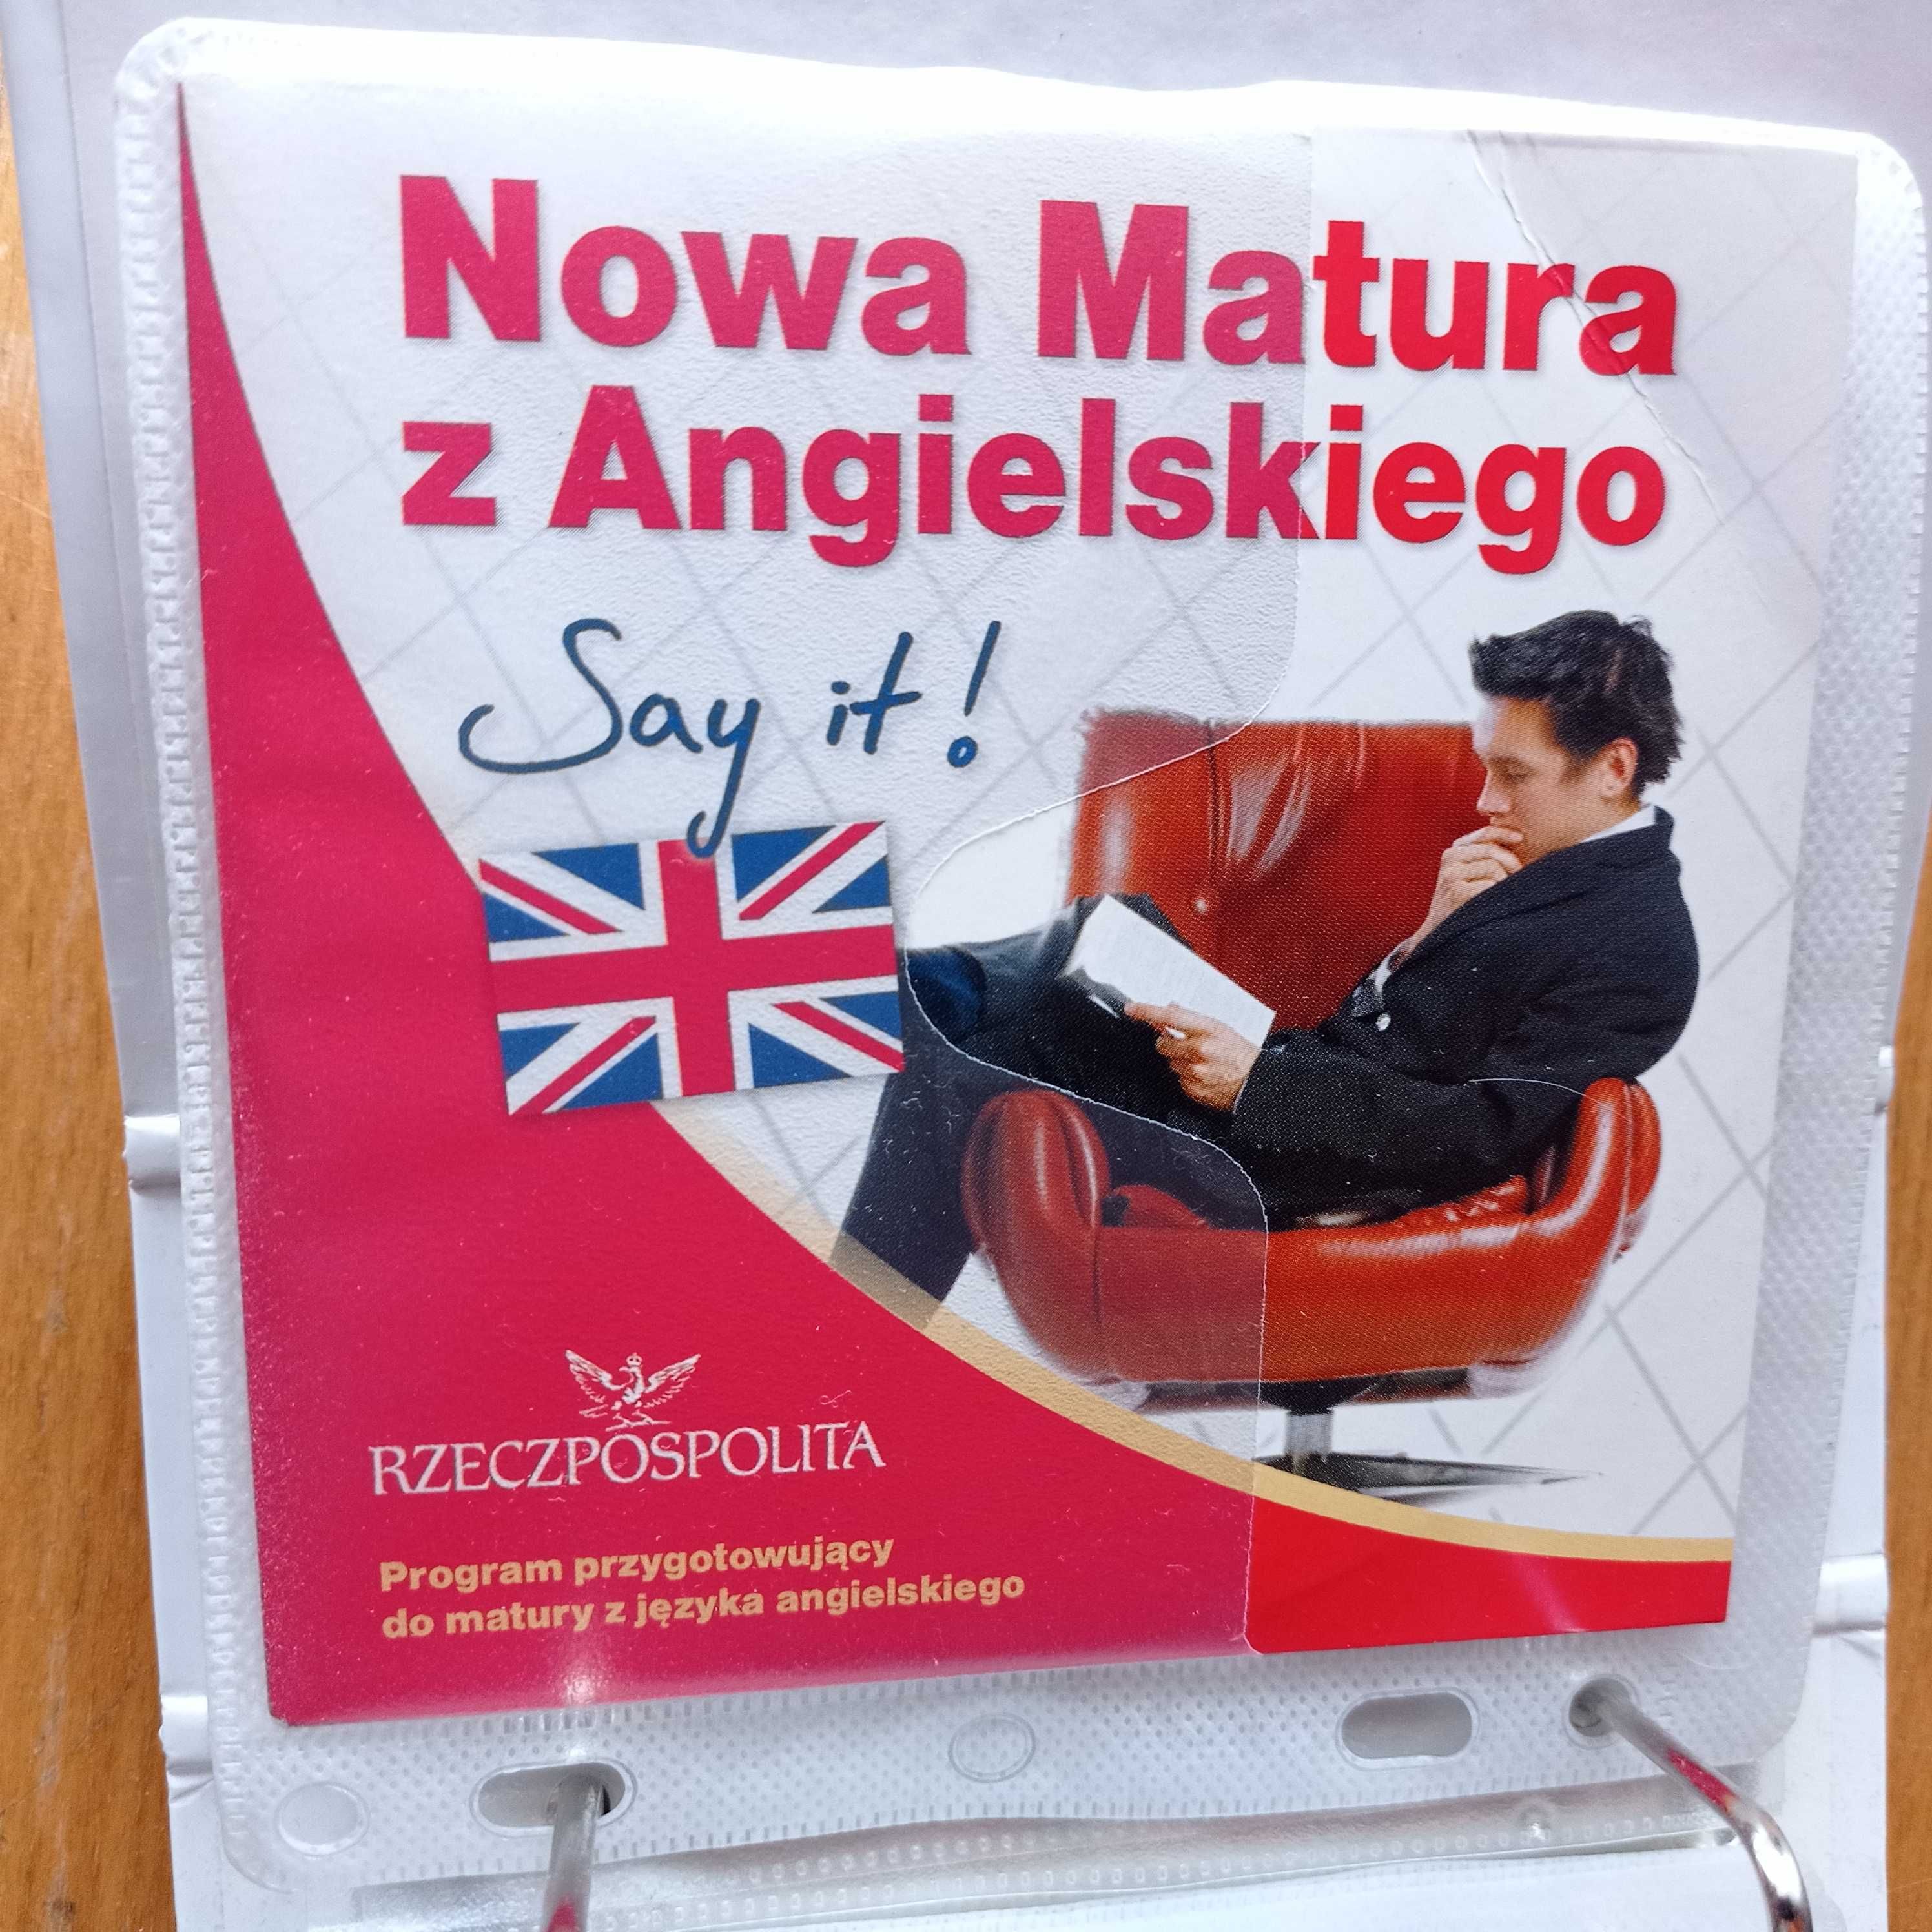 Say it! PC Nowa Matura z angielskiego płyta CD DVD